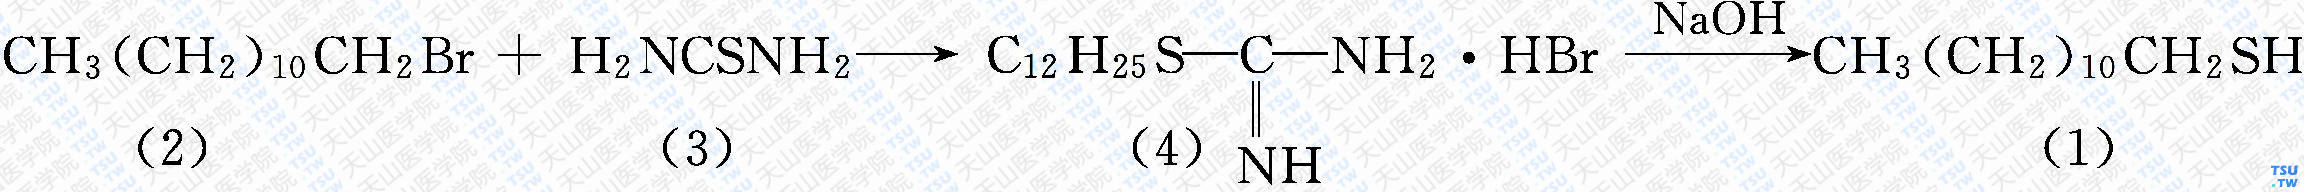 十二硫醇-1（分子式：C<sub>12</sub>N<sub>26</sub>S）的合成方法路线及其结构式